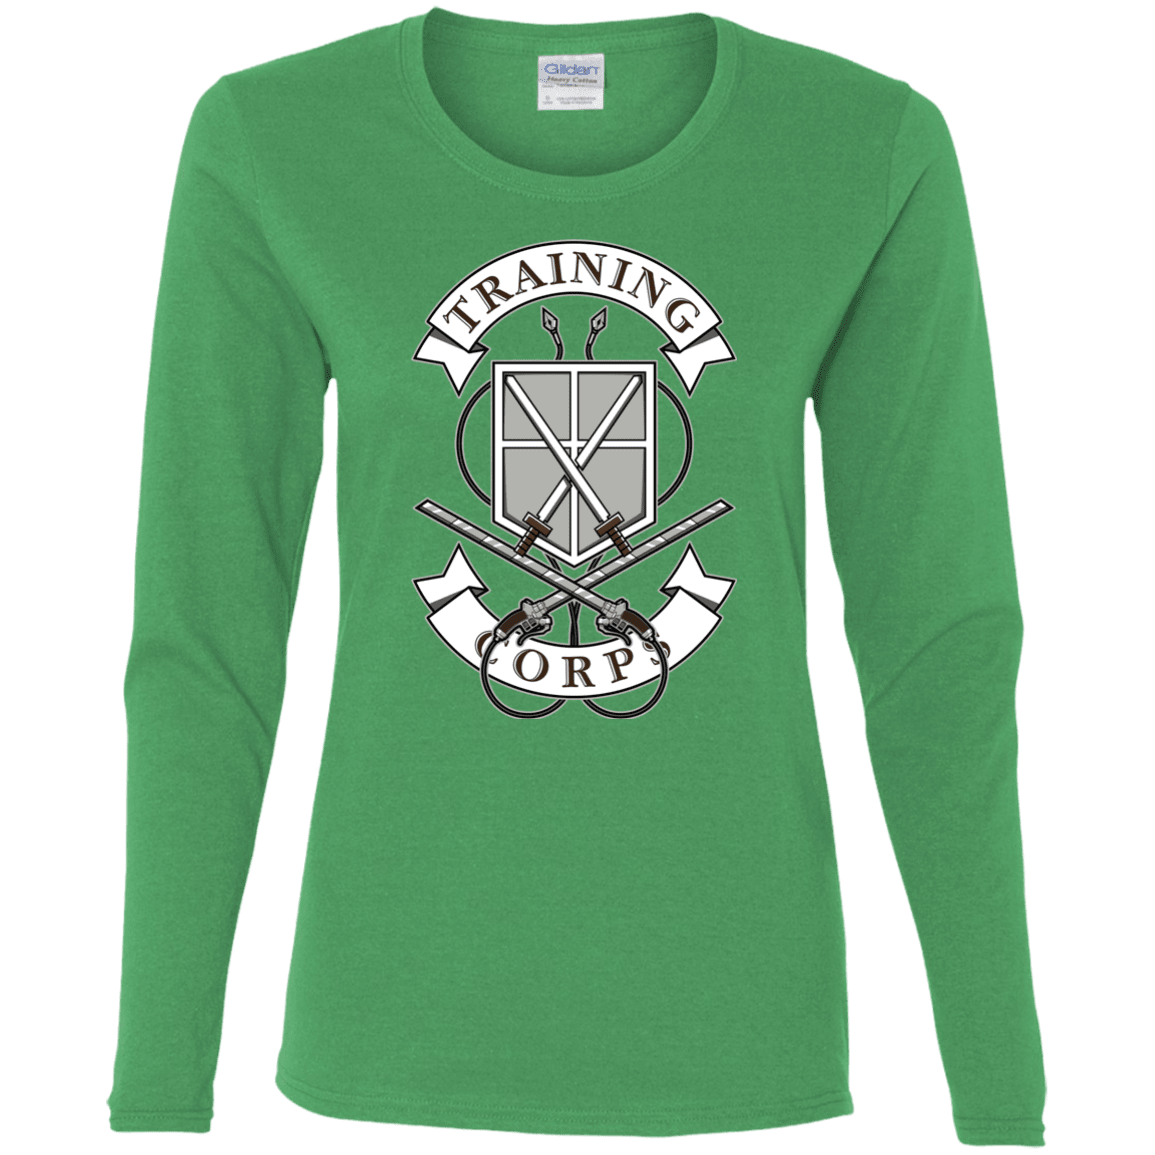 T-Shirts Irish Green / S AoT Training Corps Women's Long Sleeve T-Shirt